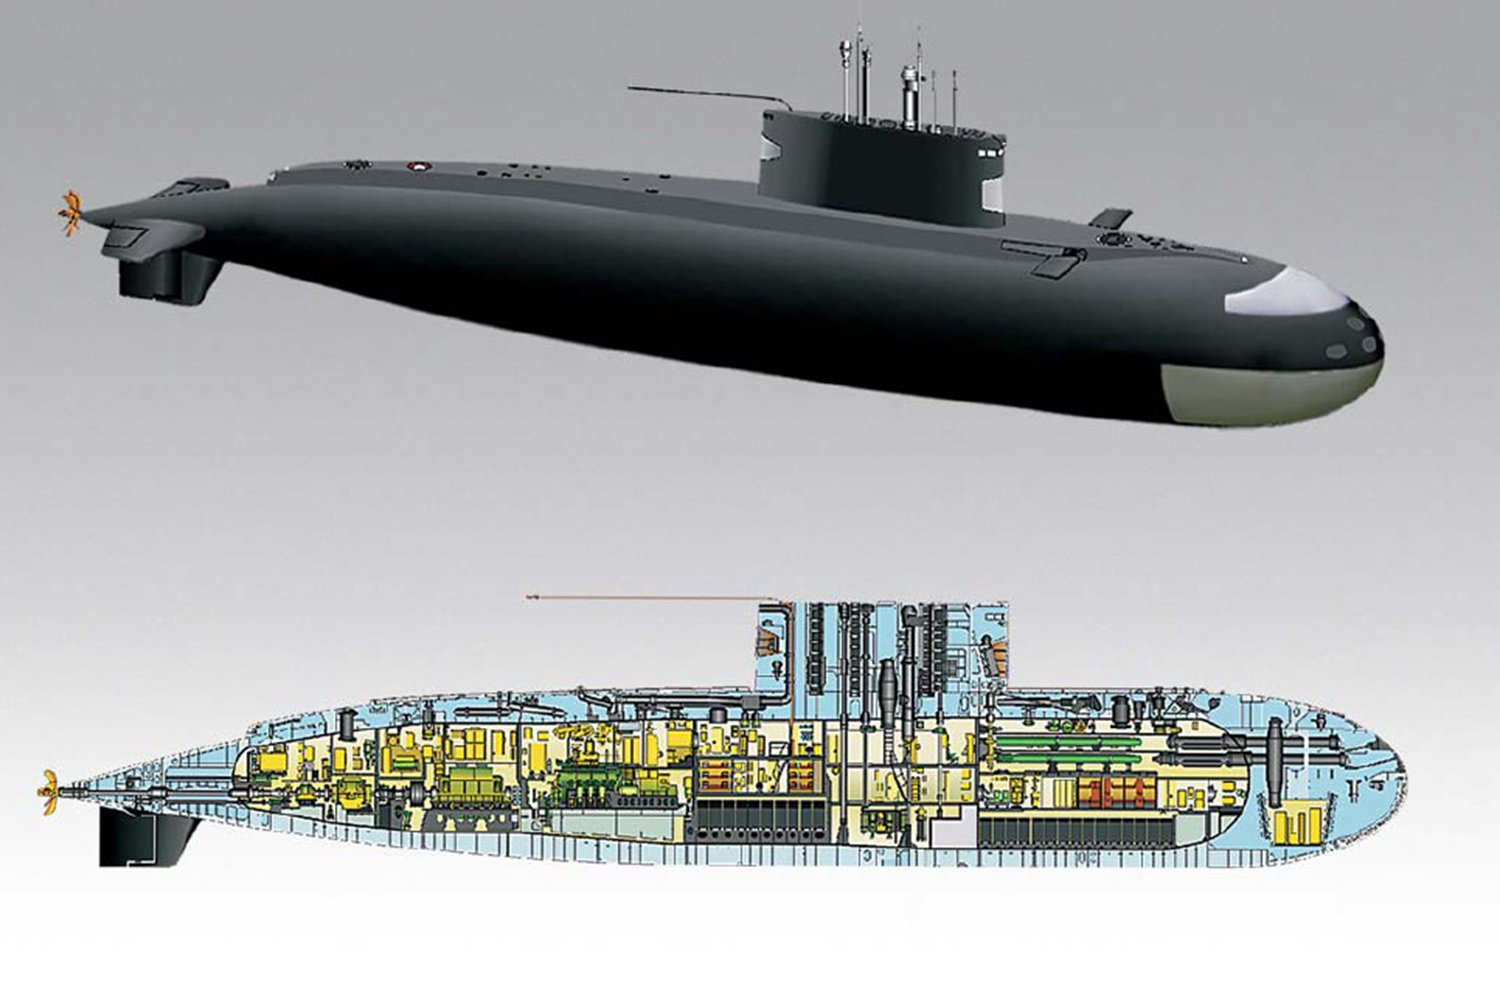 Пл характеристики. Подводная лодка 636 Варшавянка. Подводные лодки проекта 636 «Варшавянка». Подводная лодка проекта 636.3 Варшавянка. Дизель-электрические подводные лодки (ДЭПЛ) проекта 636.3 "Варшавянка",.